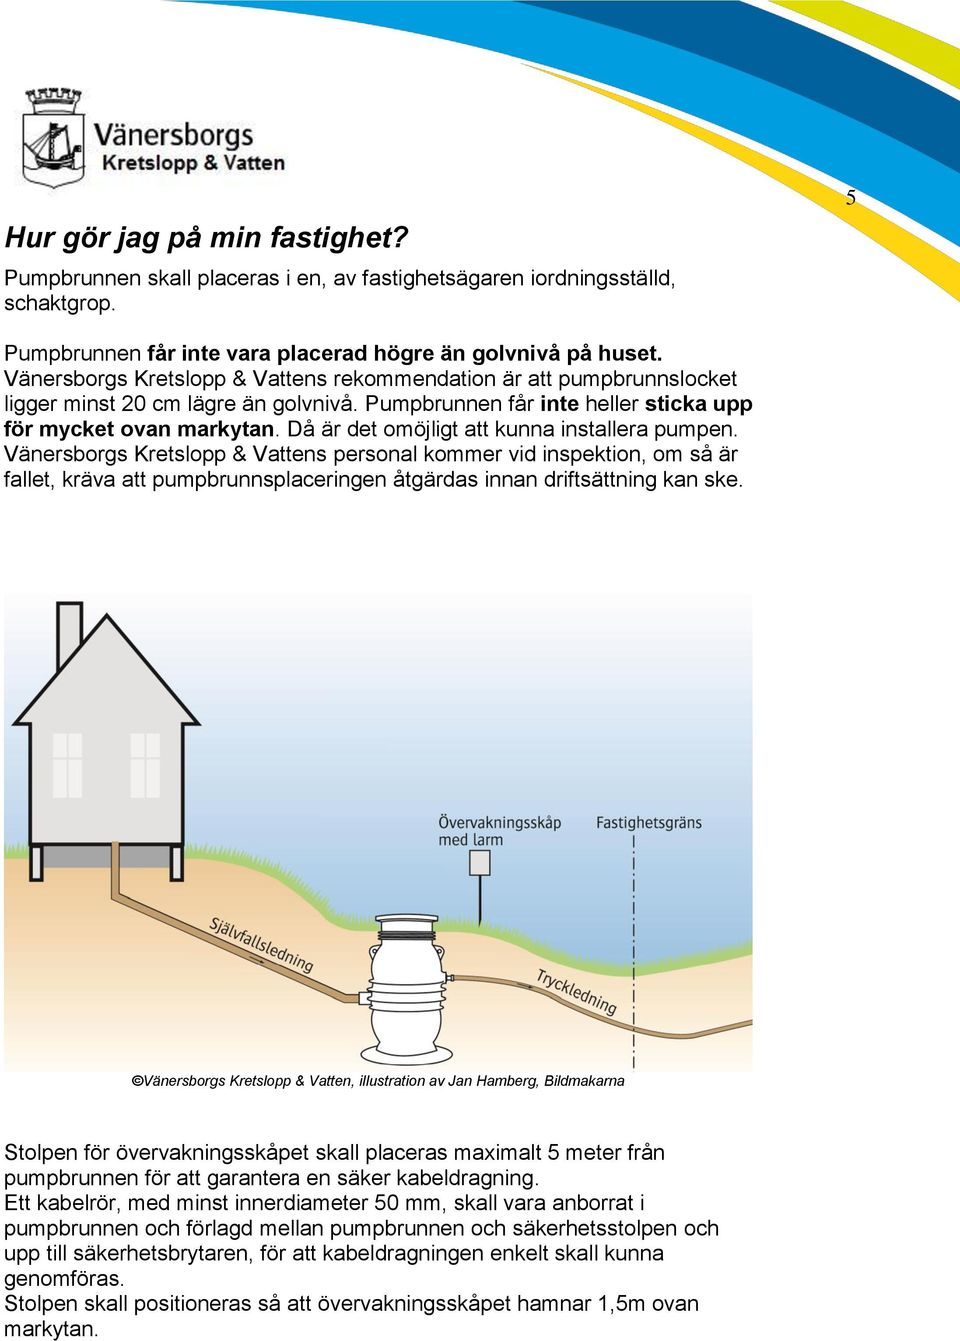 Då är det omöjligt att kunna installera pumpen. Vänersborgs Kretslopp & Vattens personal kommer vid inspektion, om så är fallet, kräva att pumpbrunnsplaceringen åtgärdas innan driftsättning kan ske.